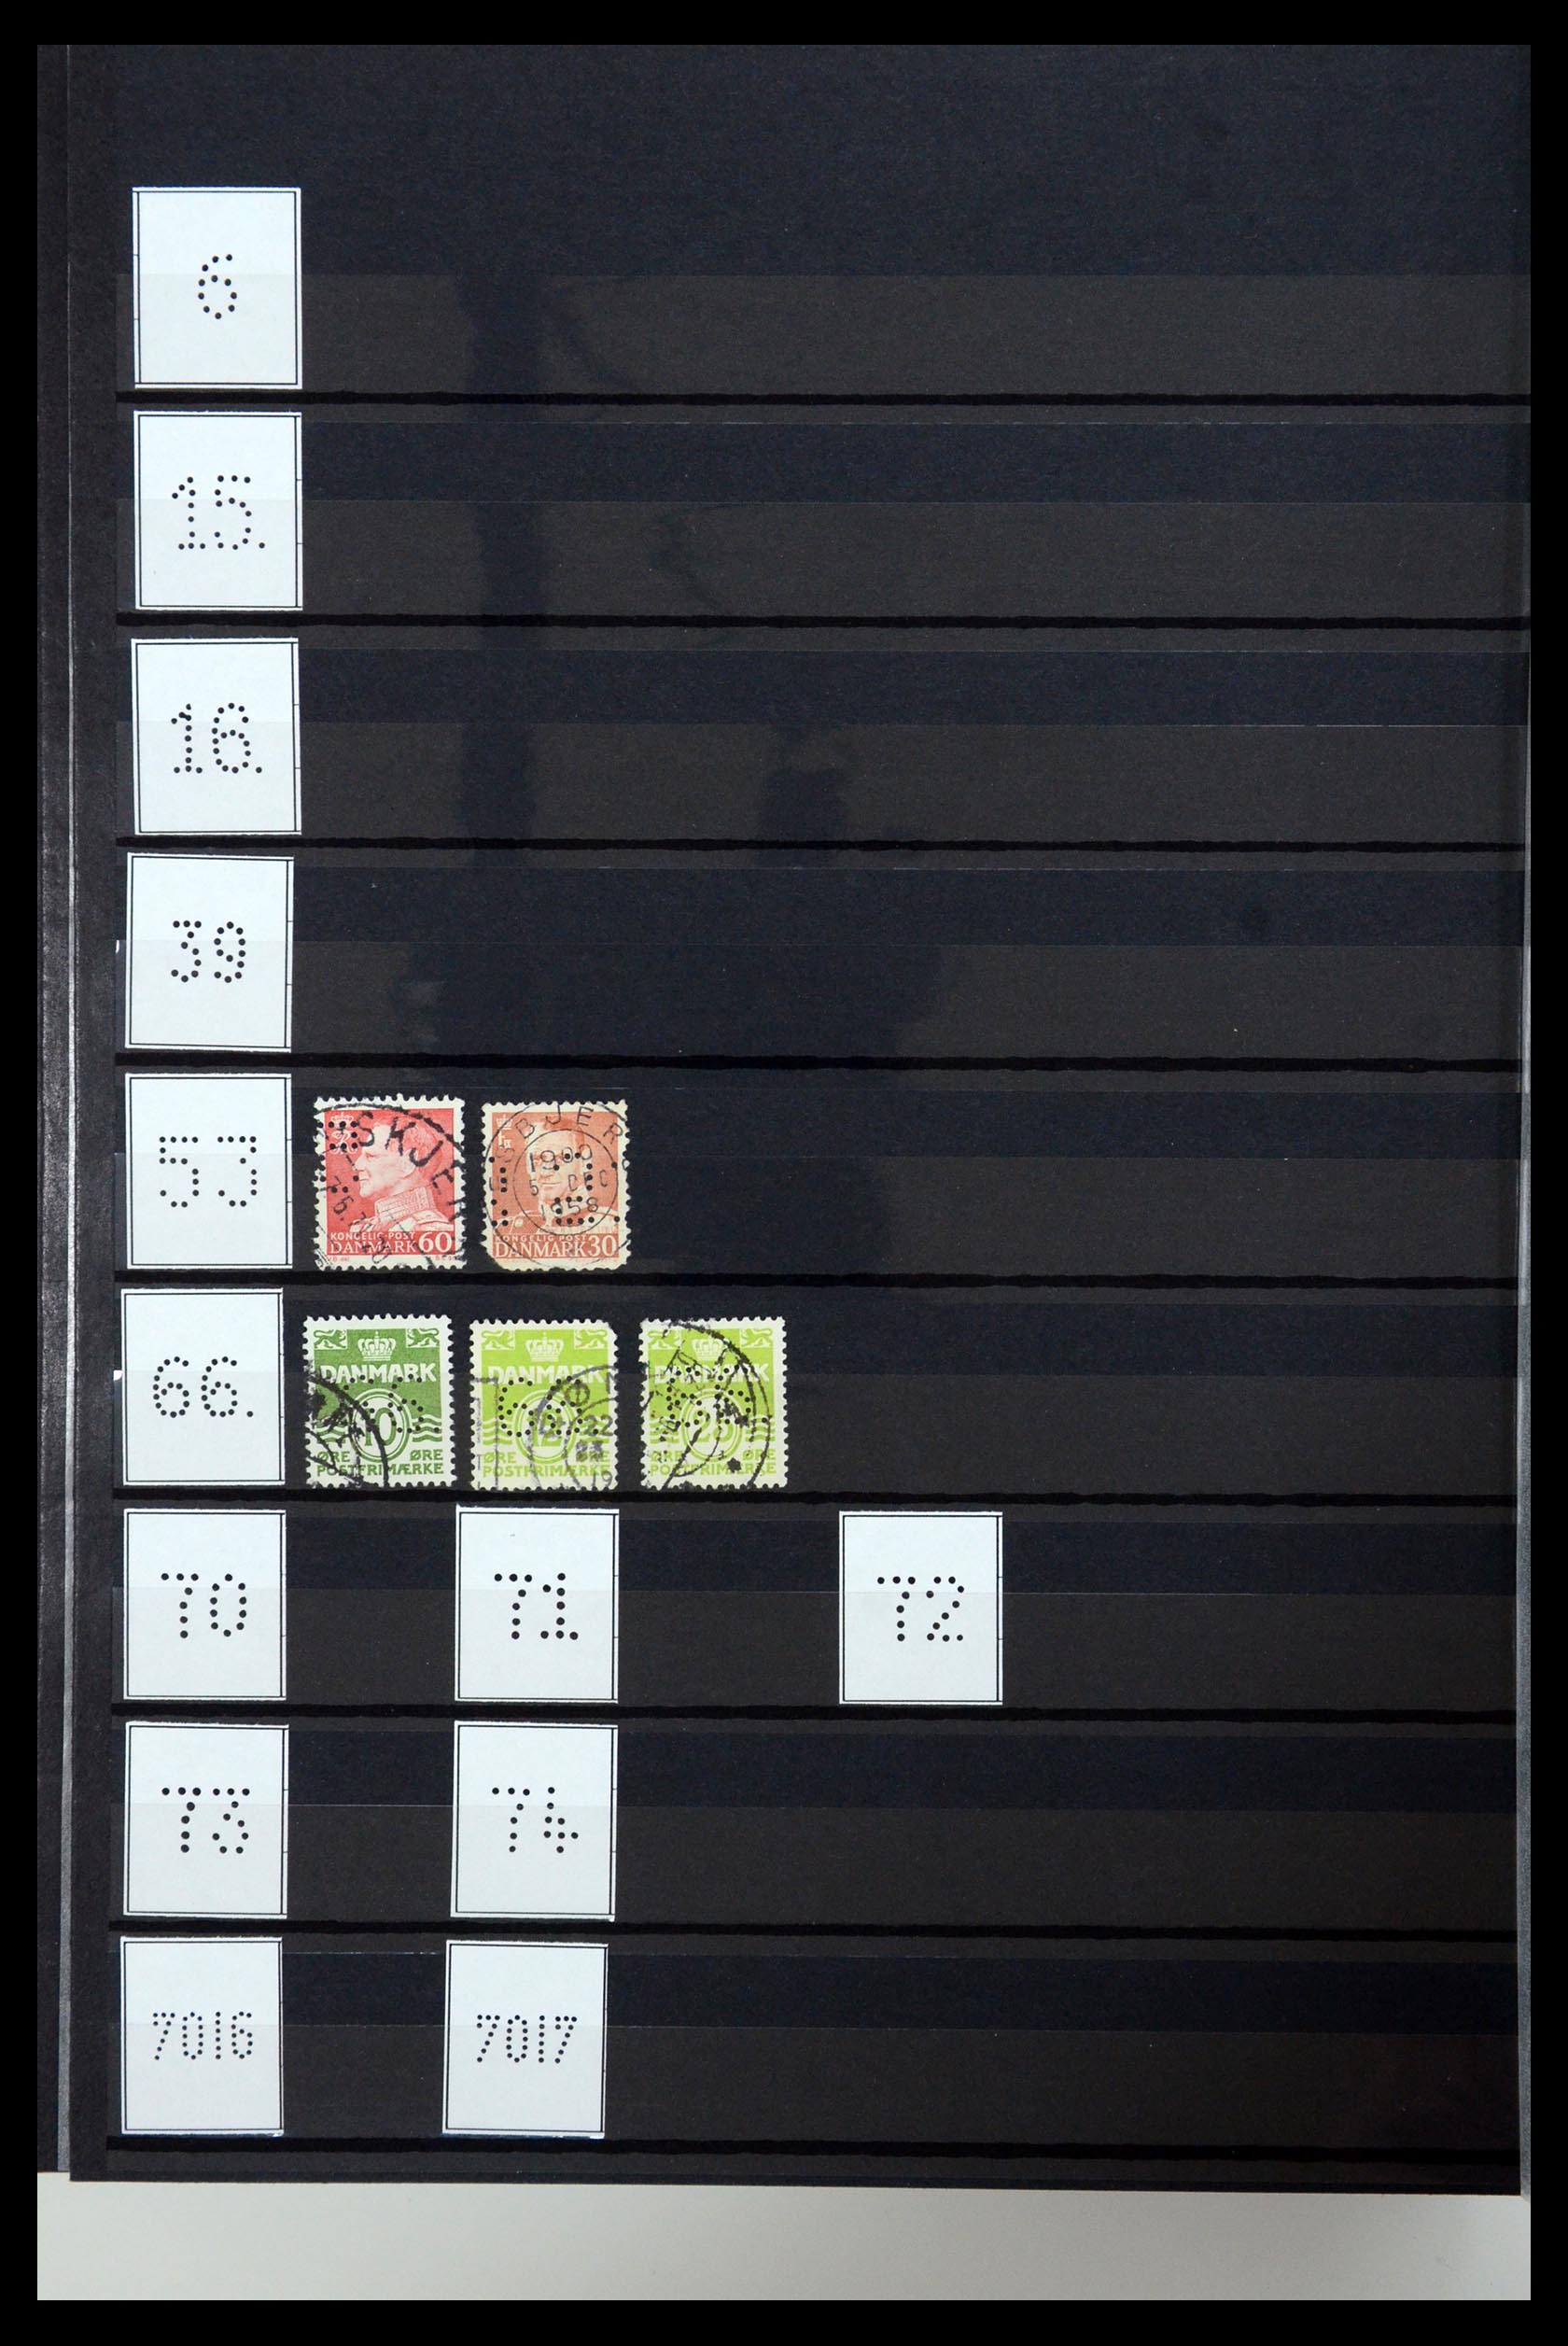 36396 228 - Postzegelverzameling 36396 Denemarken perfins.